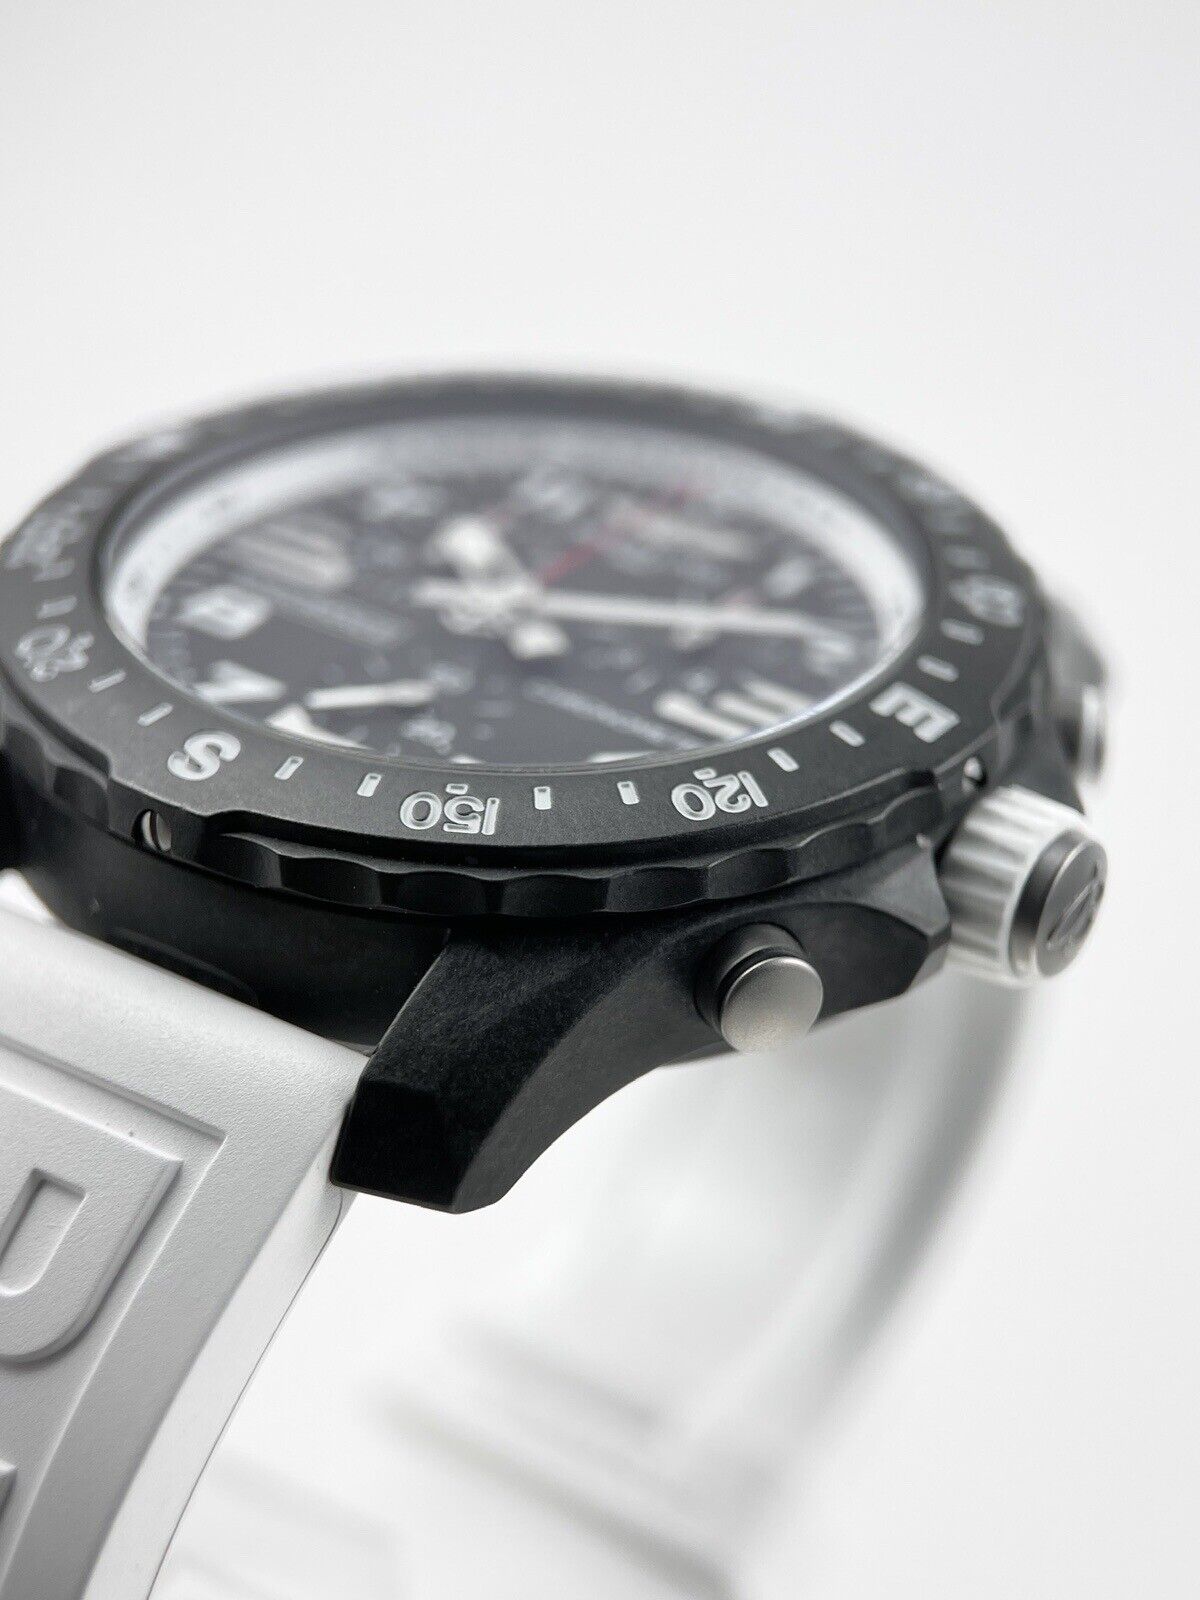 Breitling Endurance Pro Black Dial Quartz Watch 44mm - X82310 Carbon Case - B/P